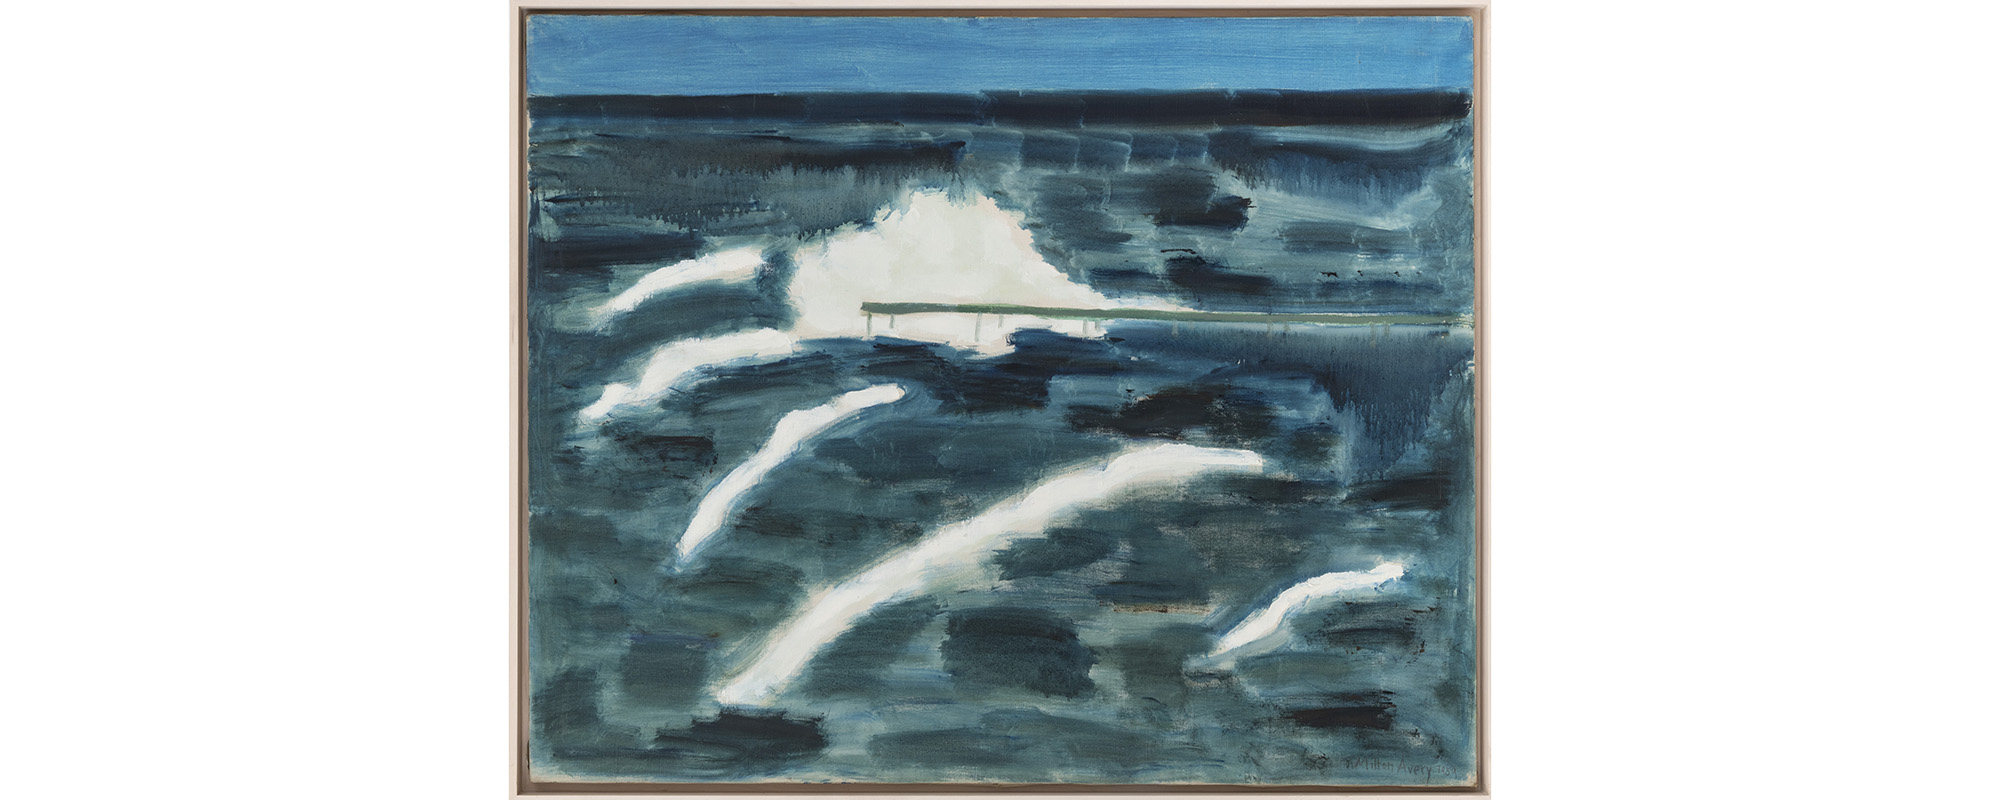 Milton Avery, Breaking Wave, 1959